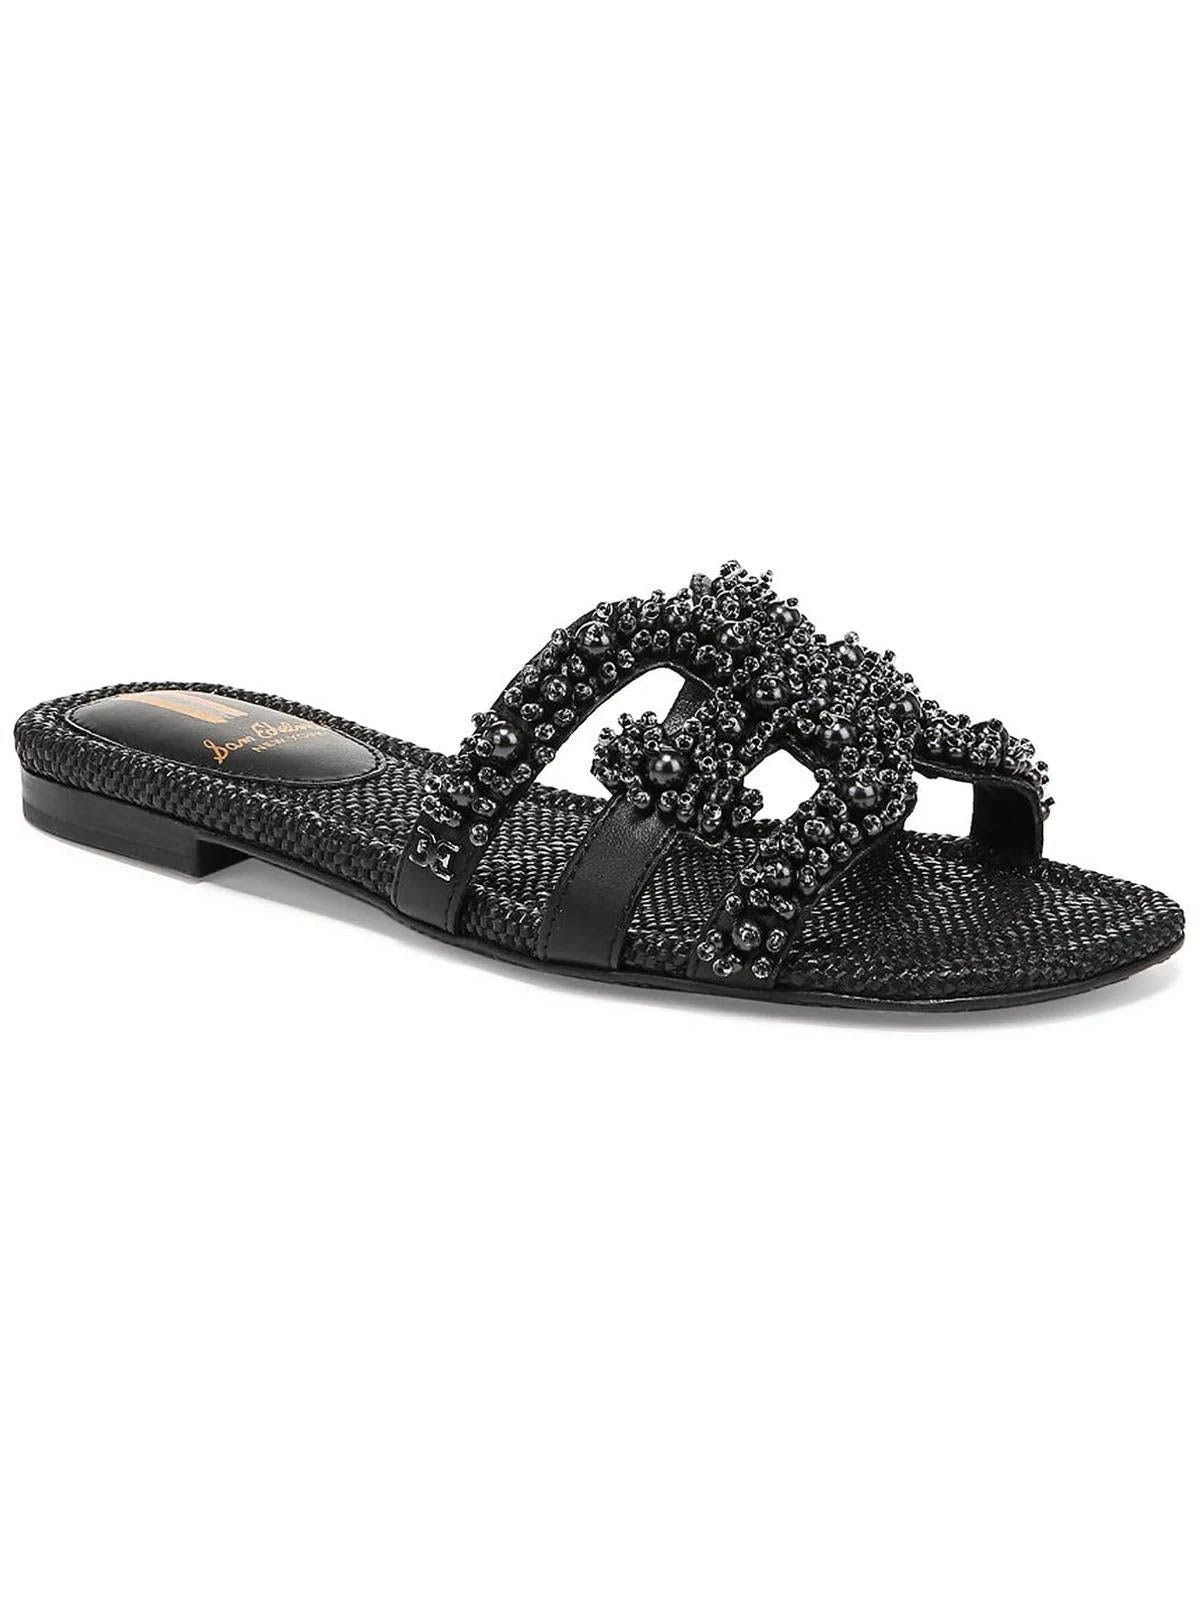 Sam Edelman Bay Perla Embellished Sandals - Black - Size 8 for Women | Image